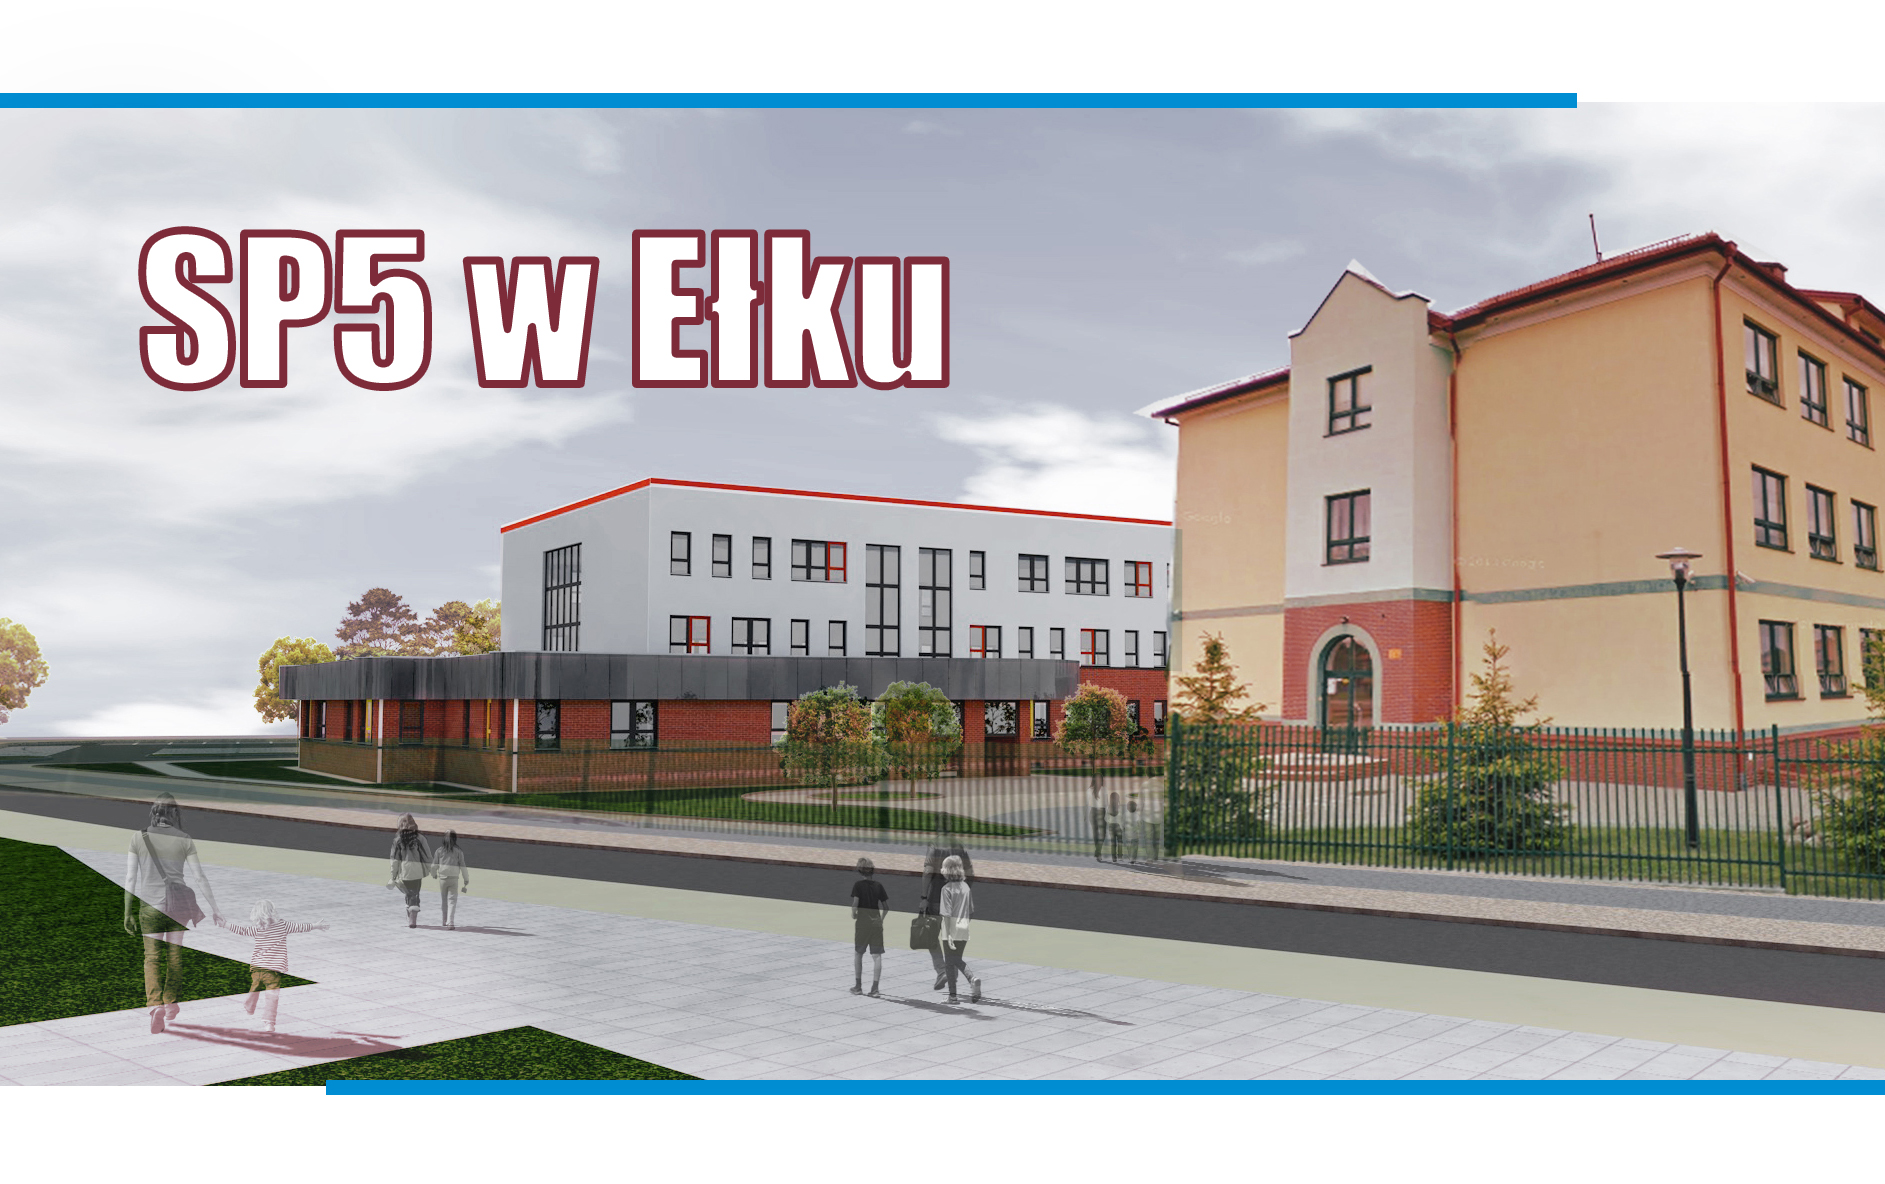 Rozbudowa Szkoły Podstawowej nr 5 w Ełku